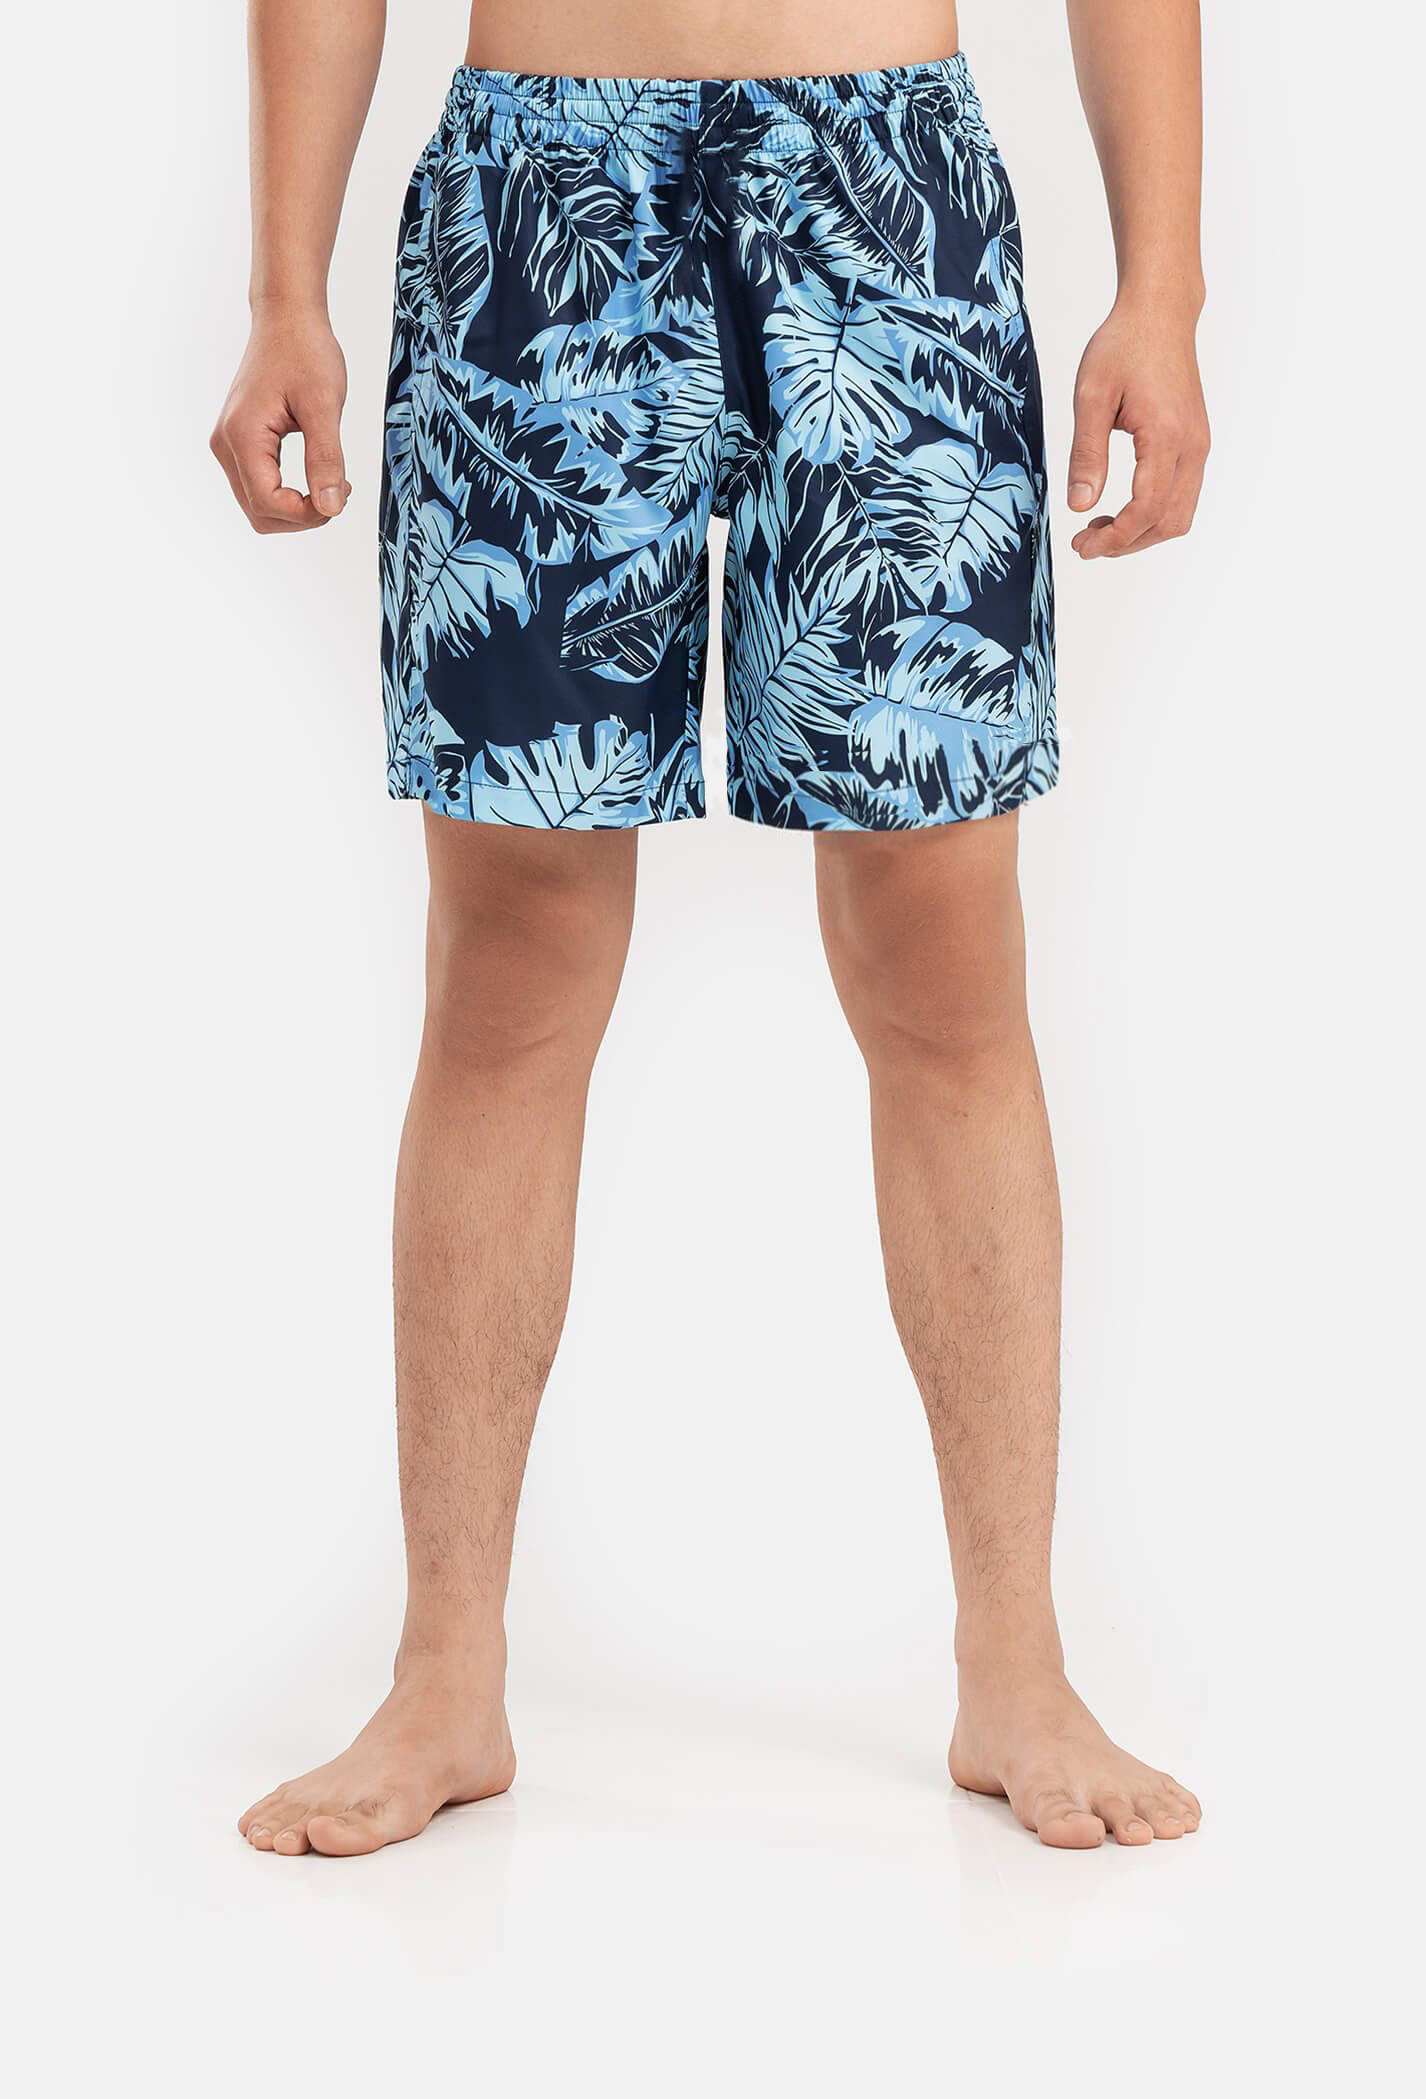 Outlet - Quần shorts nam Classic Beach có túi khoá sau xanh-nhat